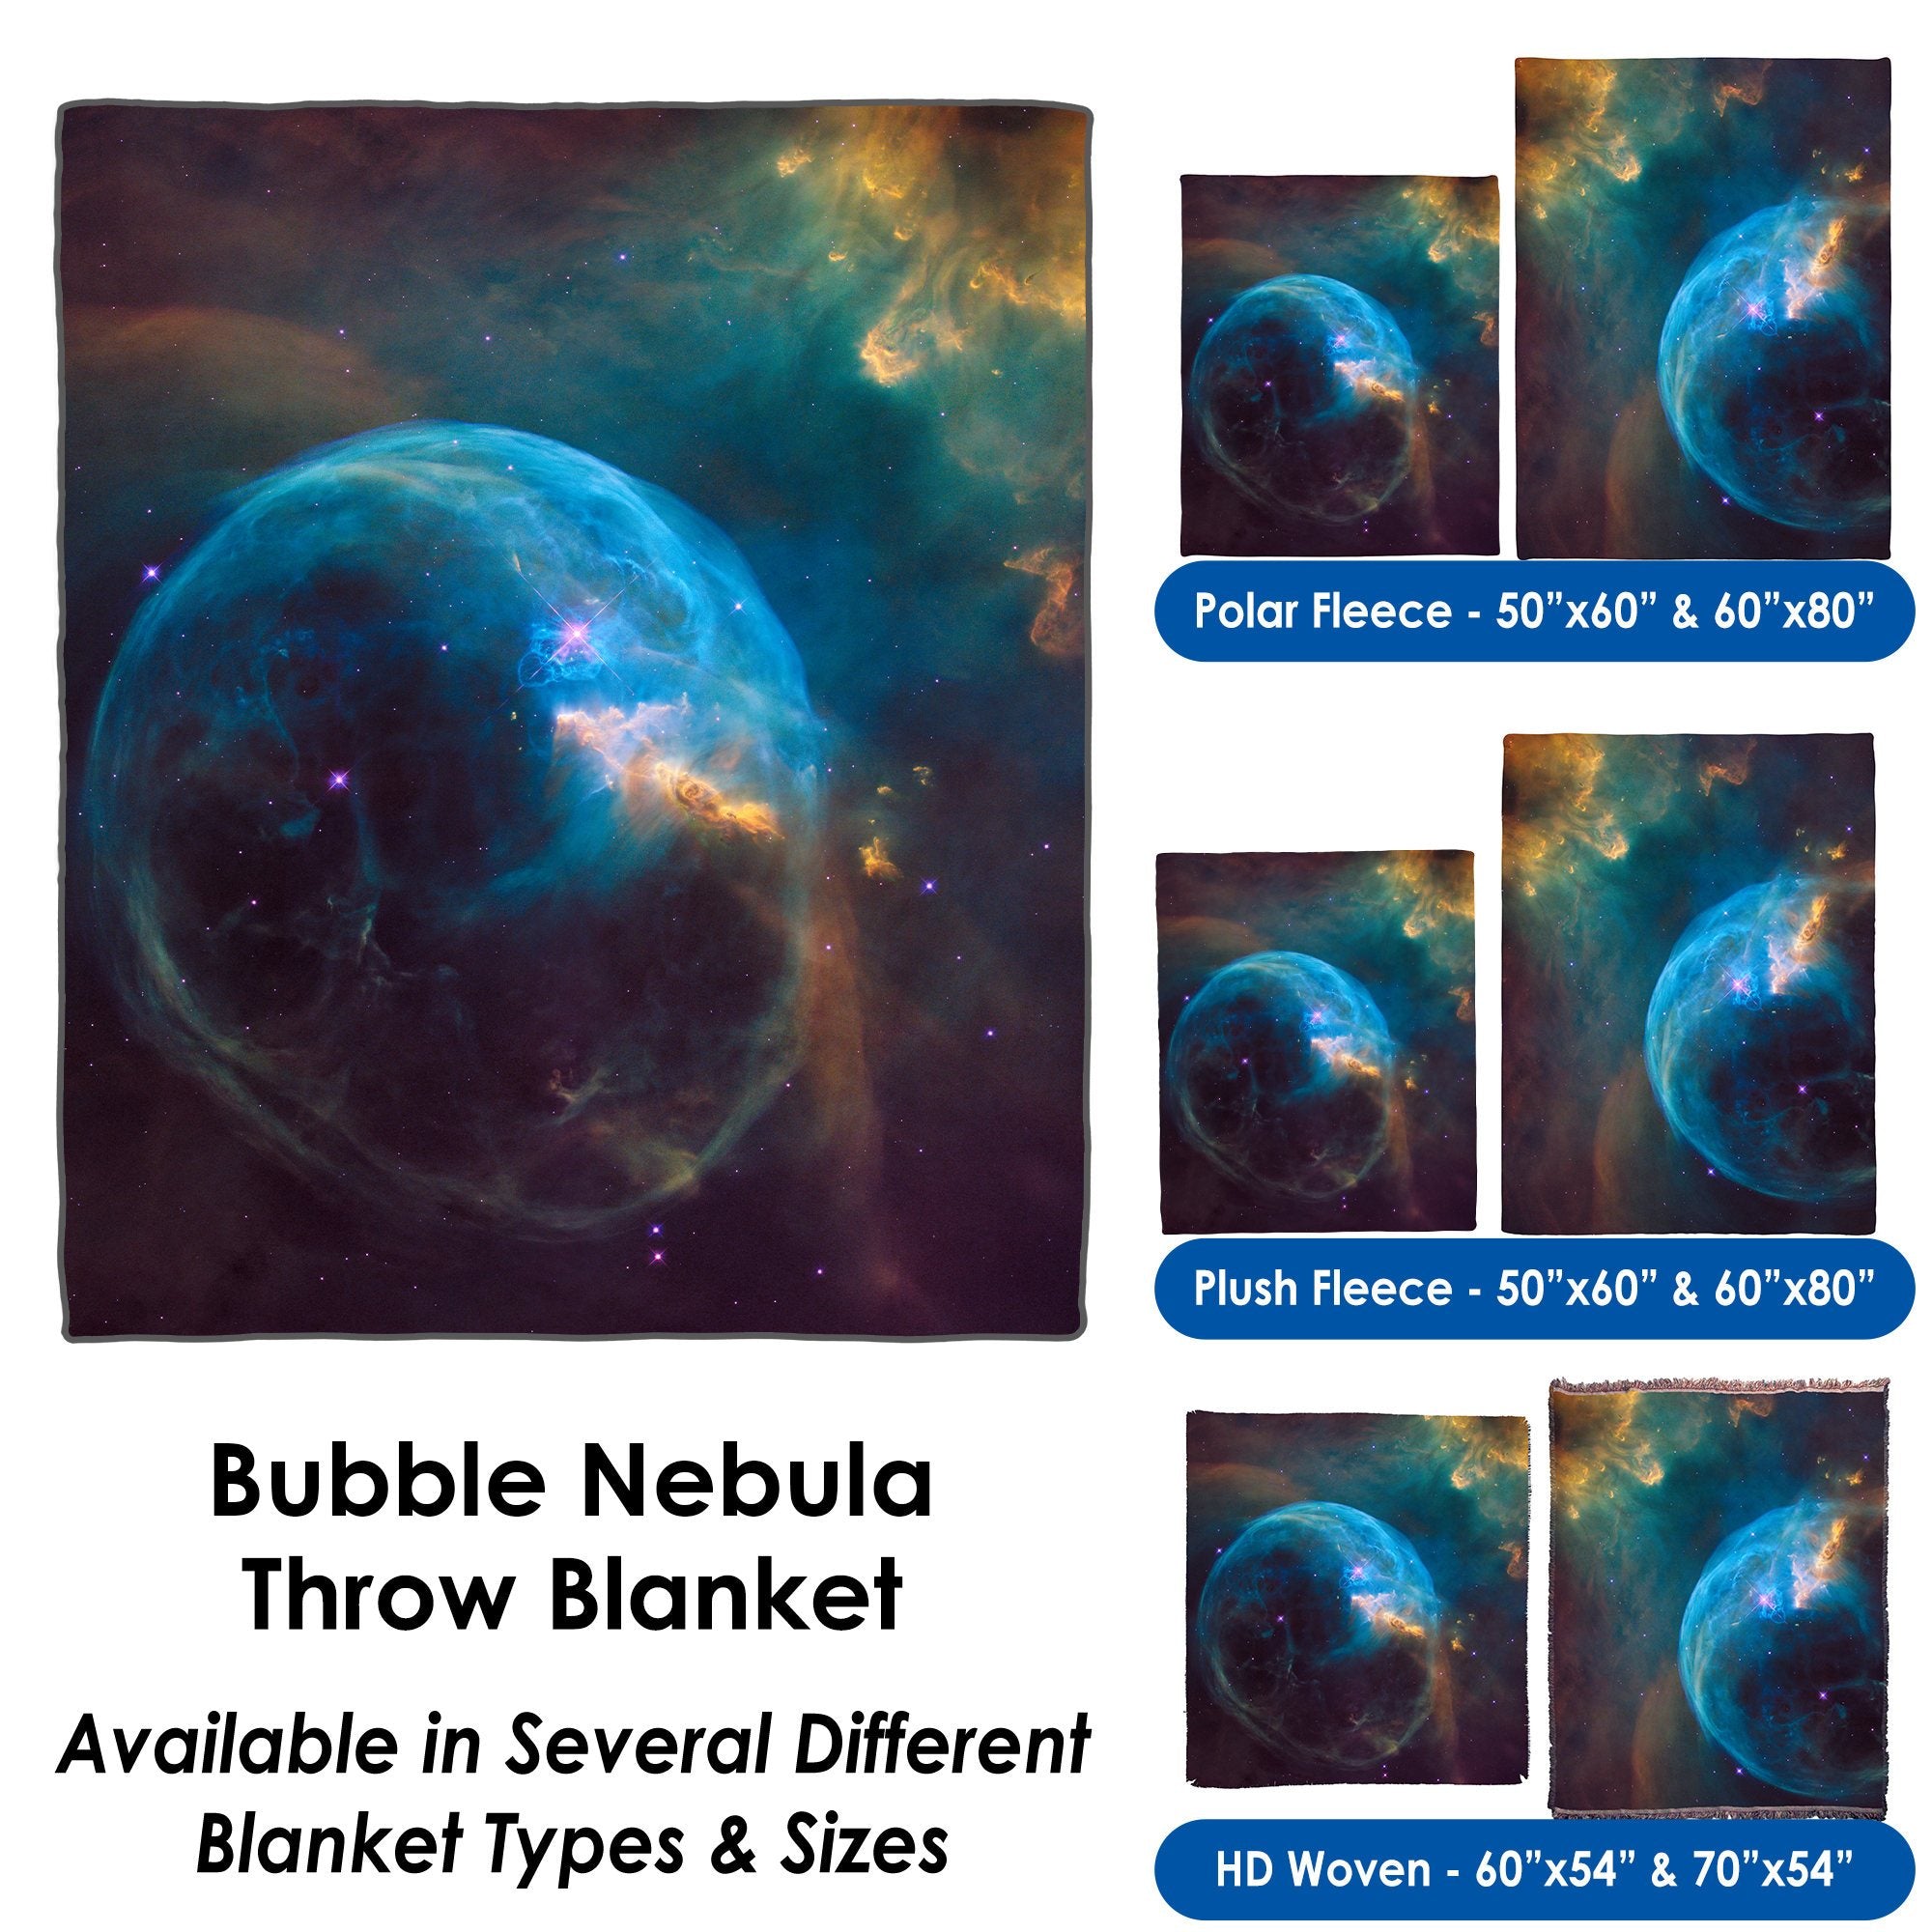 Bubble Nebula - Throw Blanket